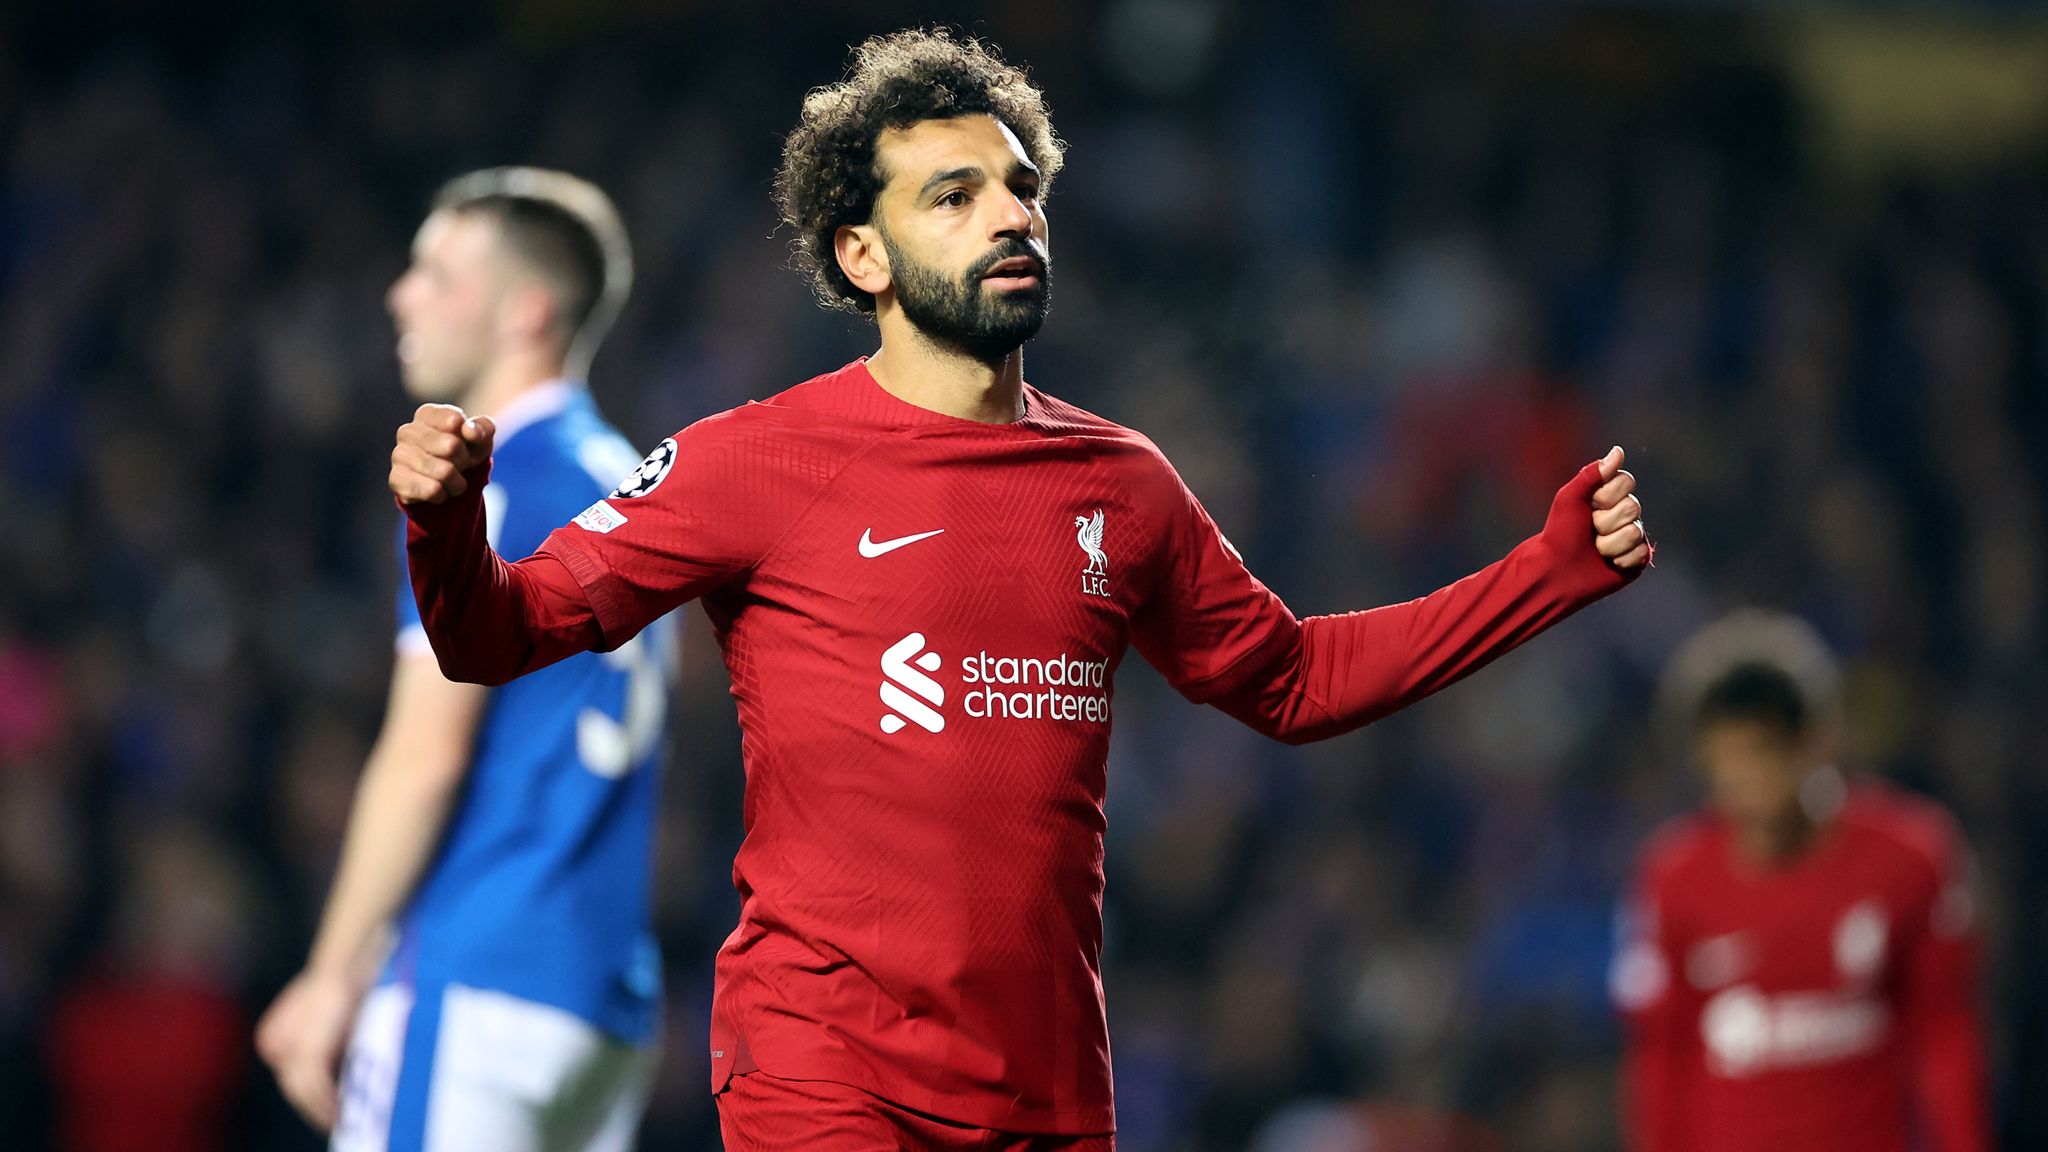 Rangers 1-7 Liverpool: Mohamed Salah 